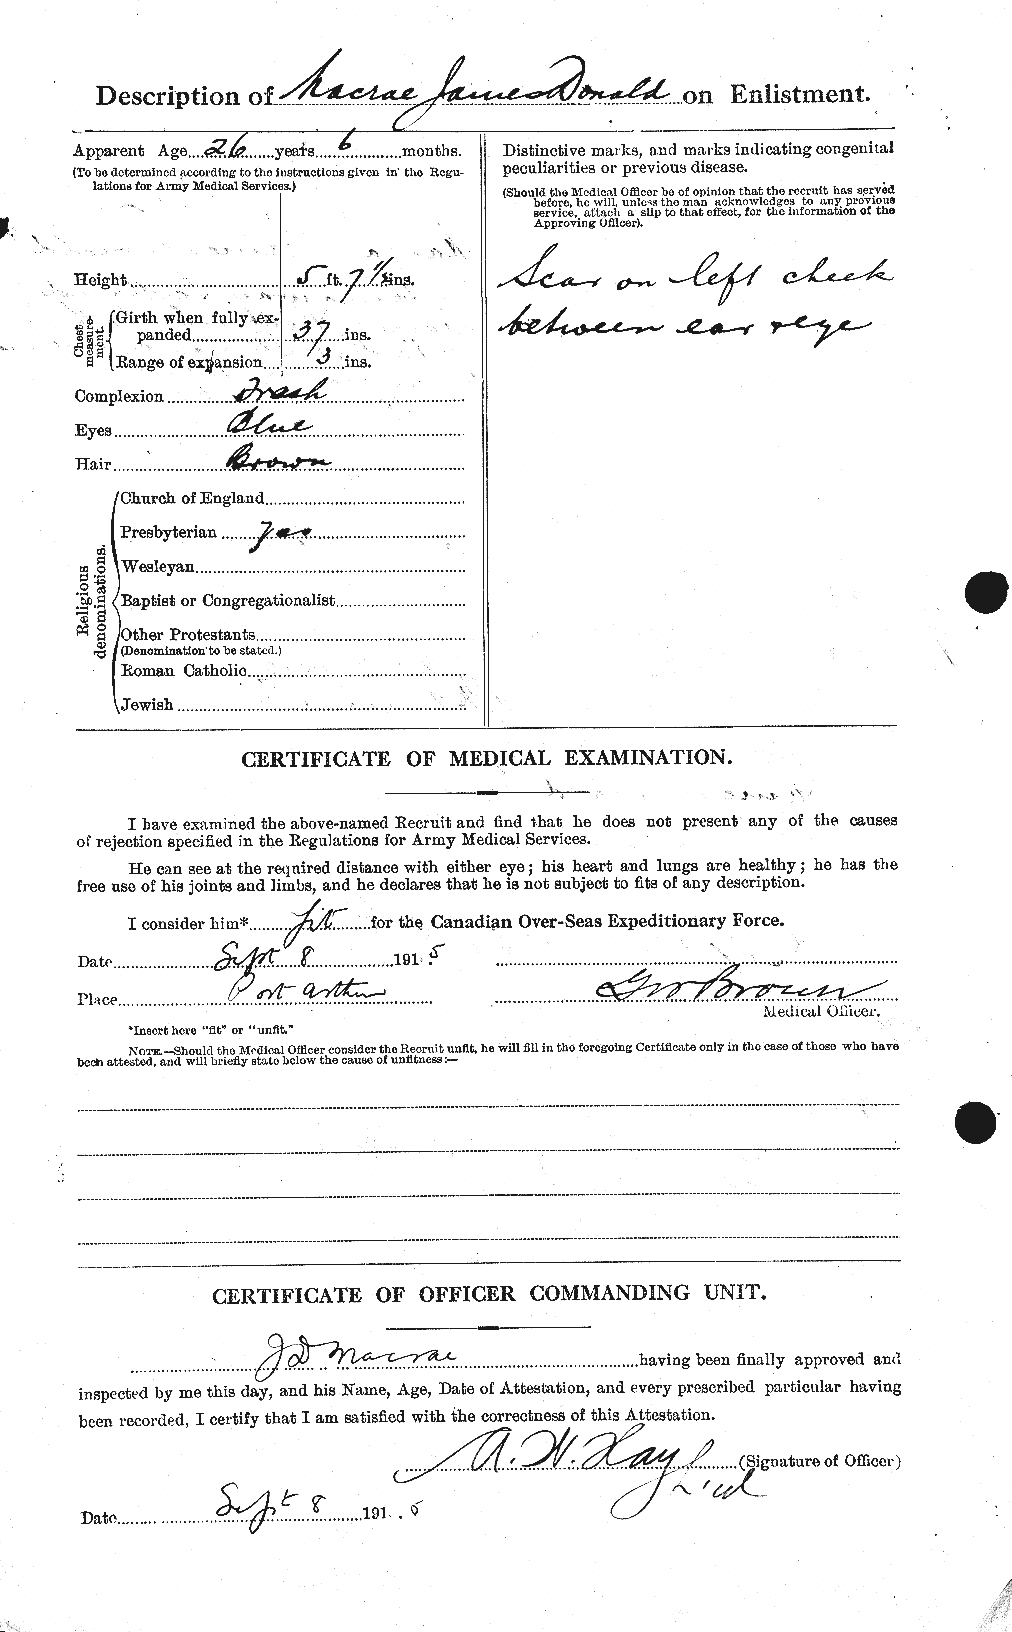 Dossiers du Personnel de la Première Guerre mondiale - CEC 542783b